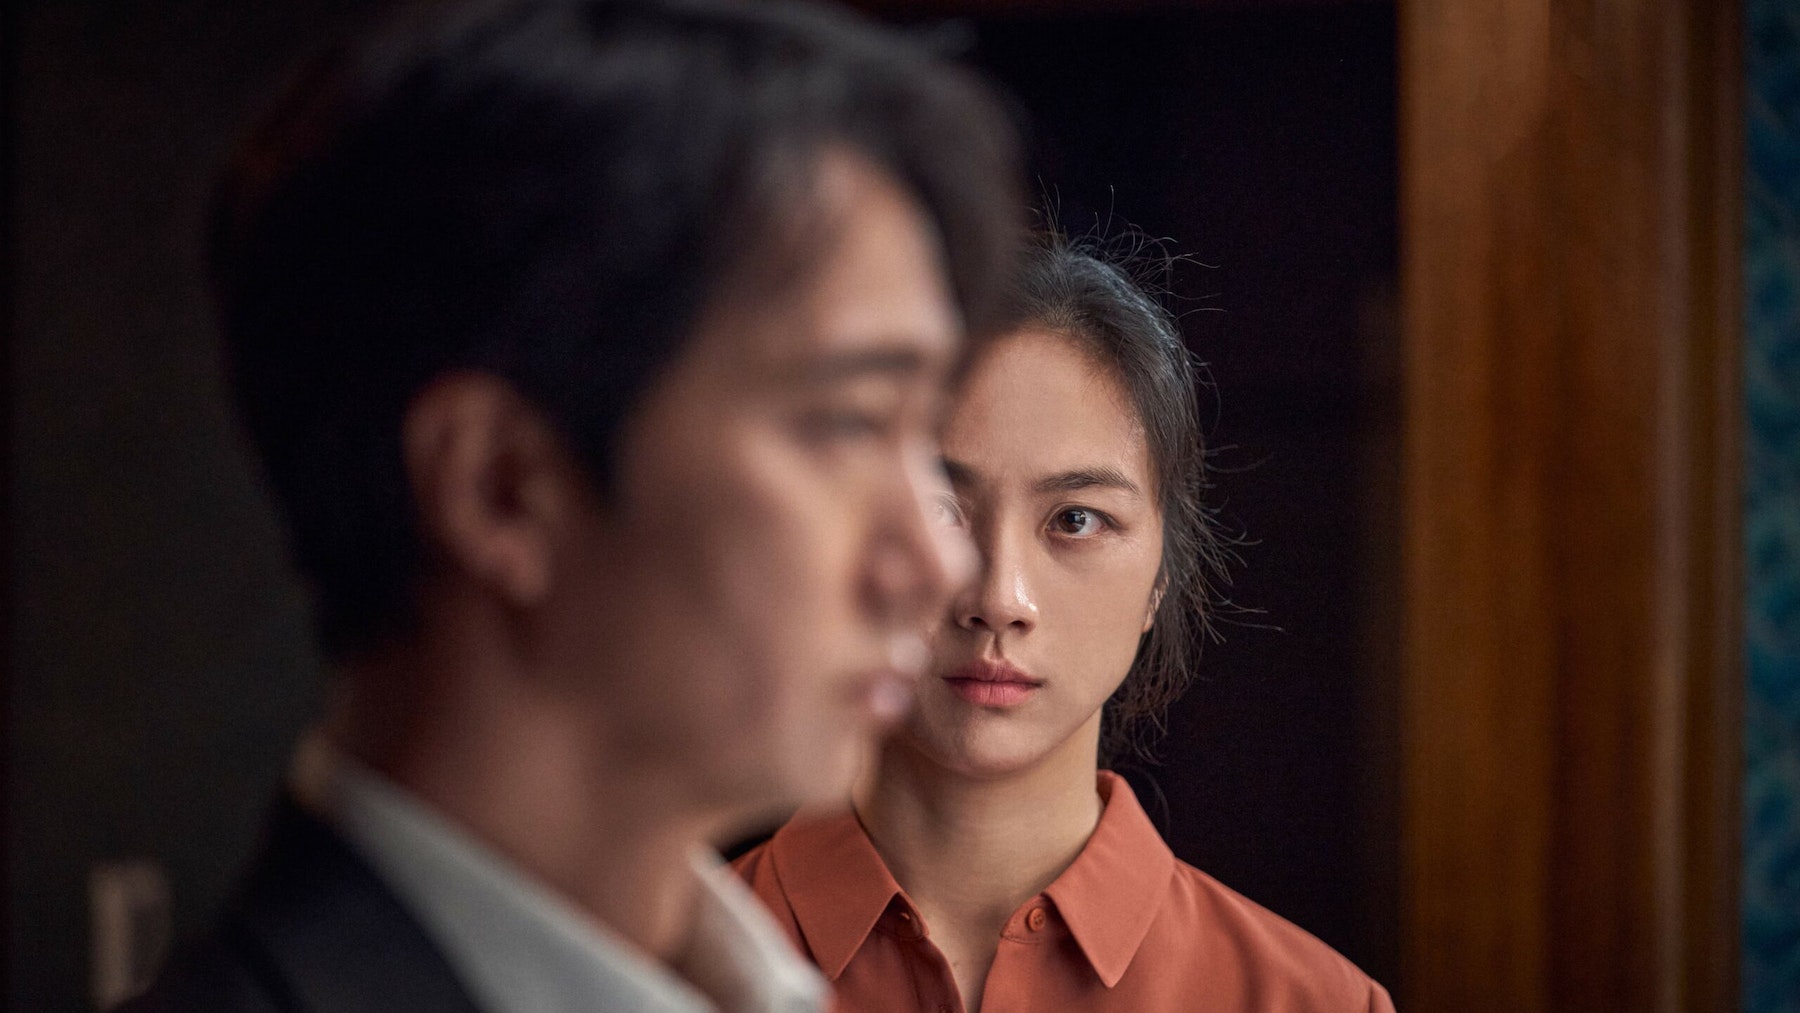 Vezi Trailerul Pentru Cel Mai Nou Film Al Lui Park Chan-Wook, Decision To Leave